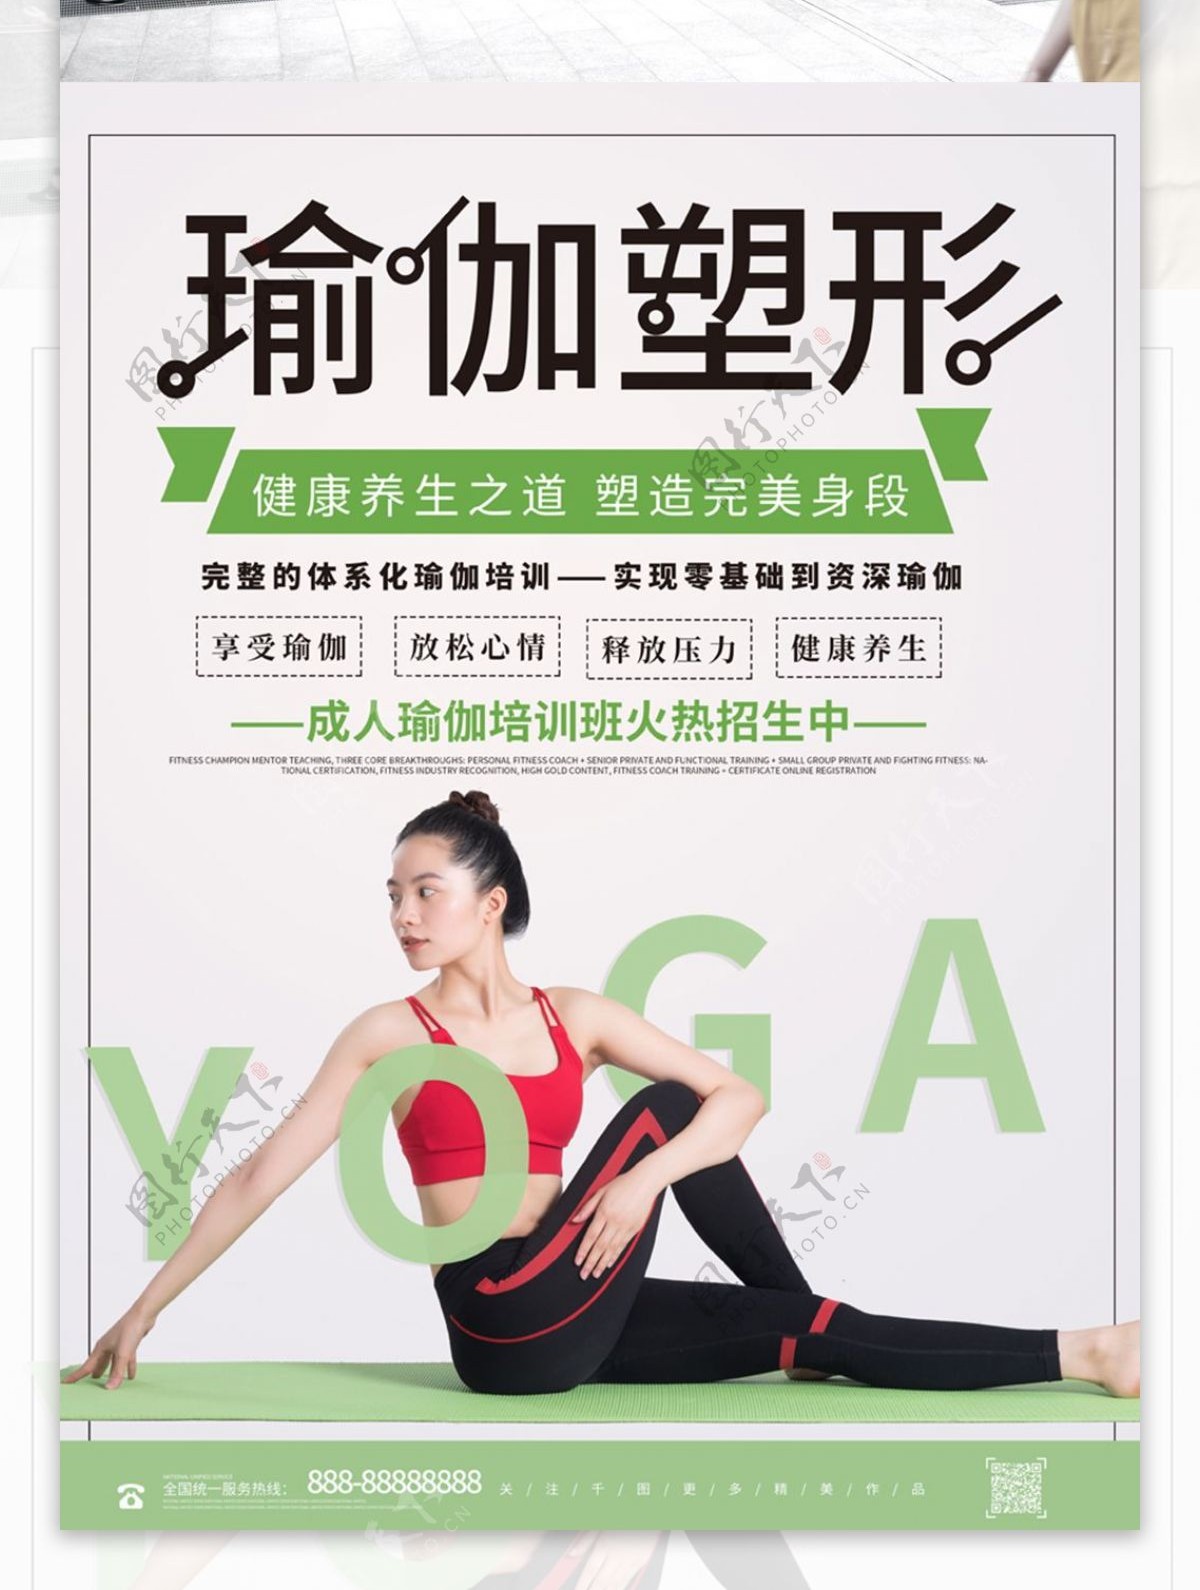 简约创意瑜珈运动健身培训招生海报